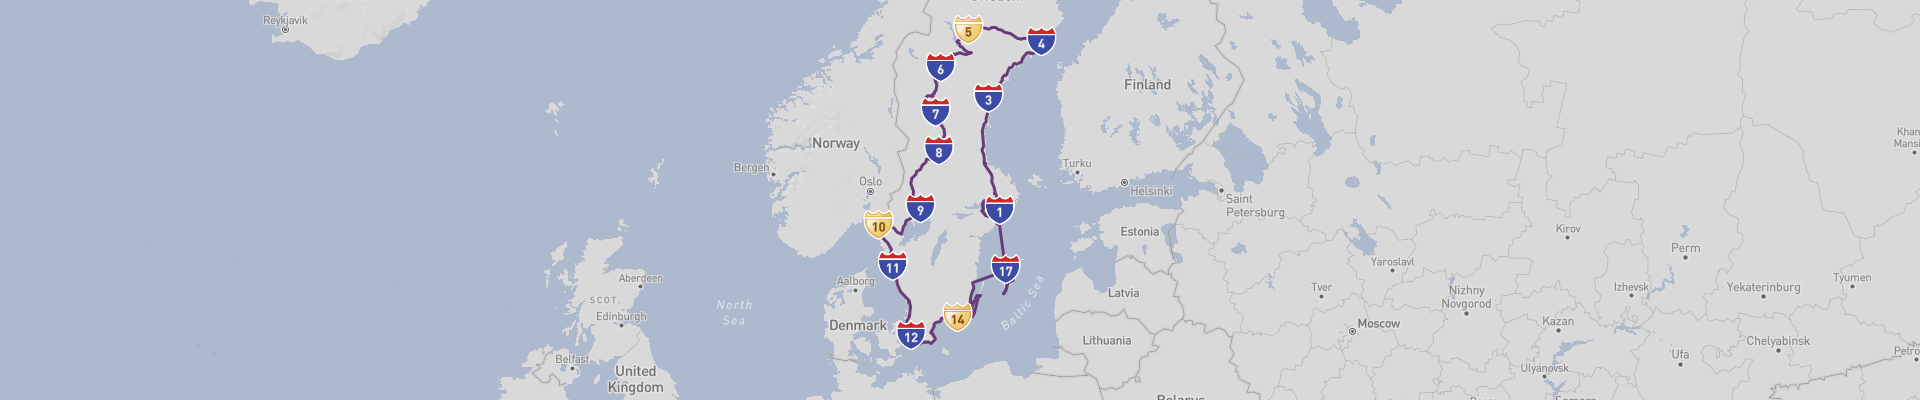 瑞典公路之旅